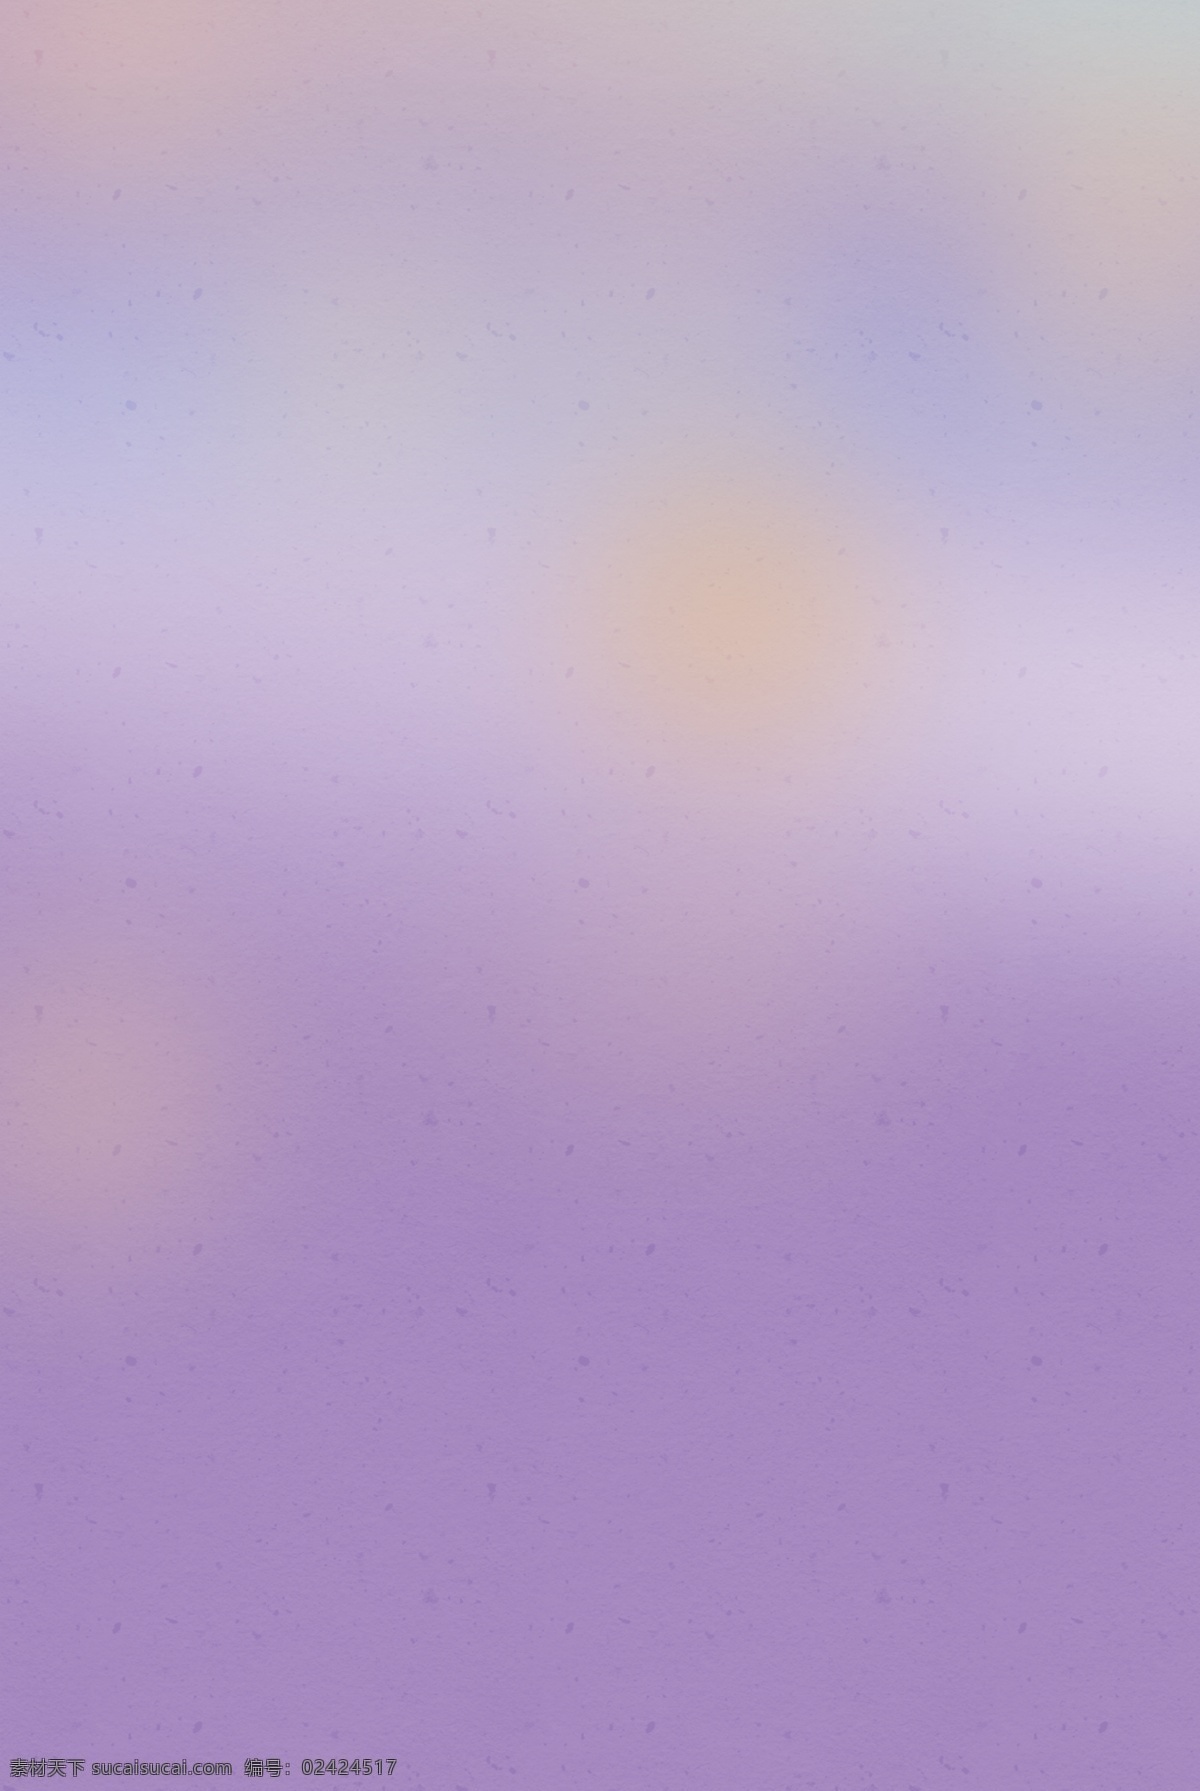 紫色 朦胧 梦幻 素雅 淡雅 唯美 背景 图 自然 清新 朦胧的光圈 浪漫的背景